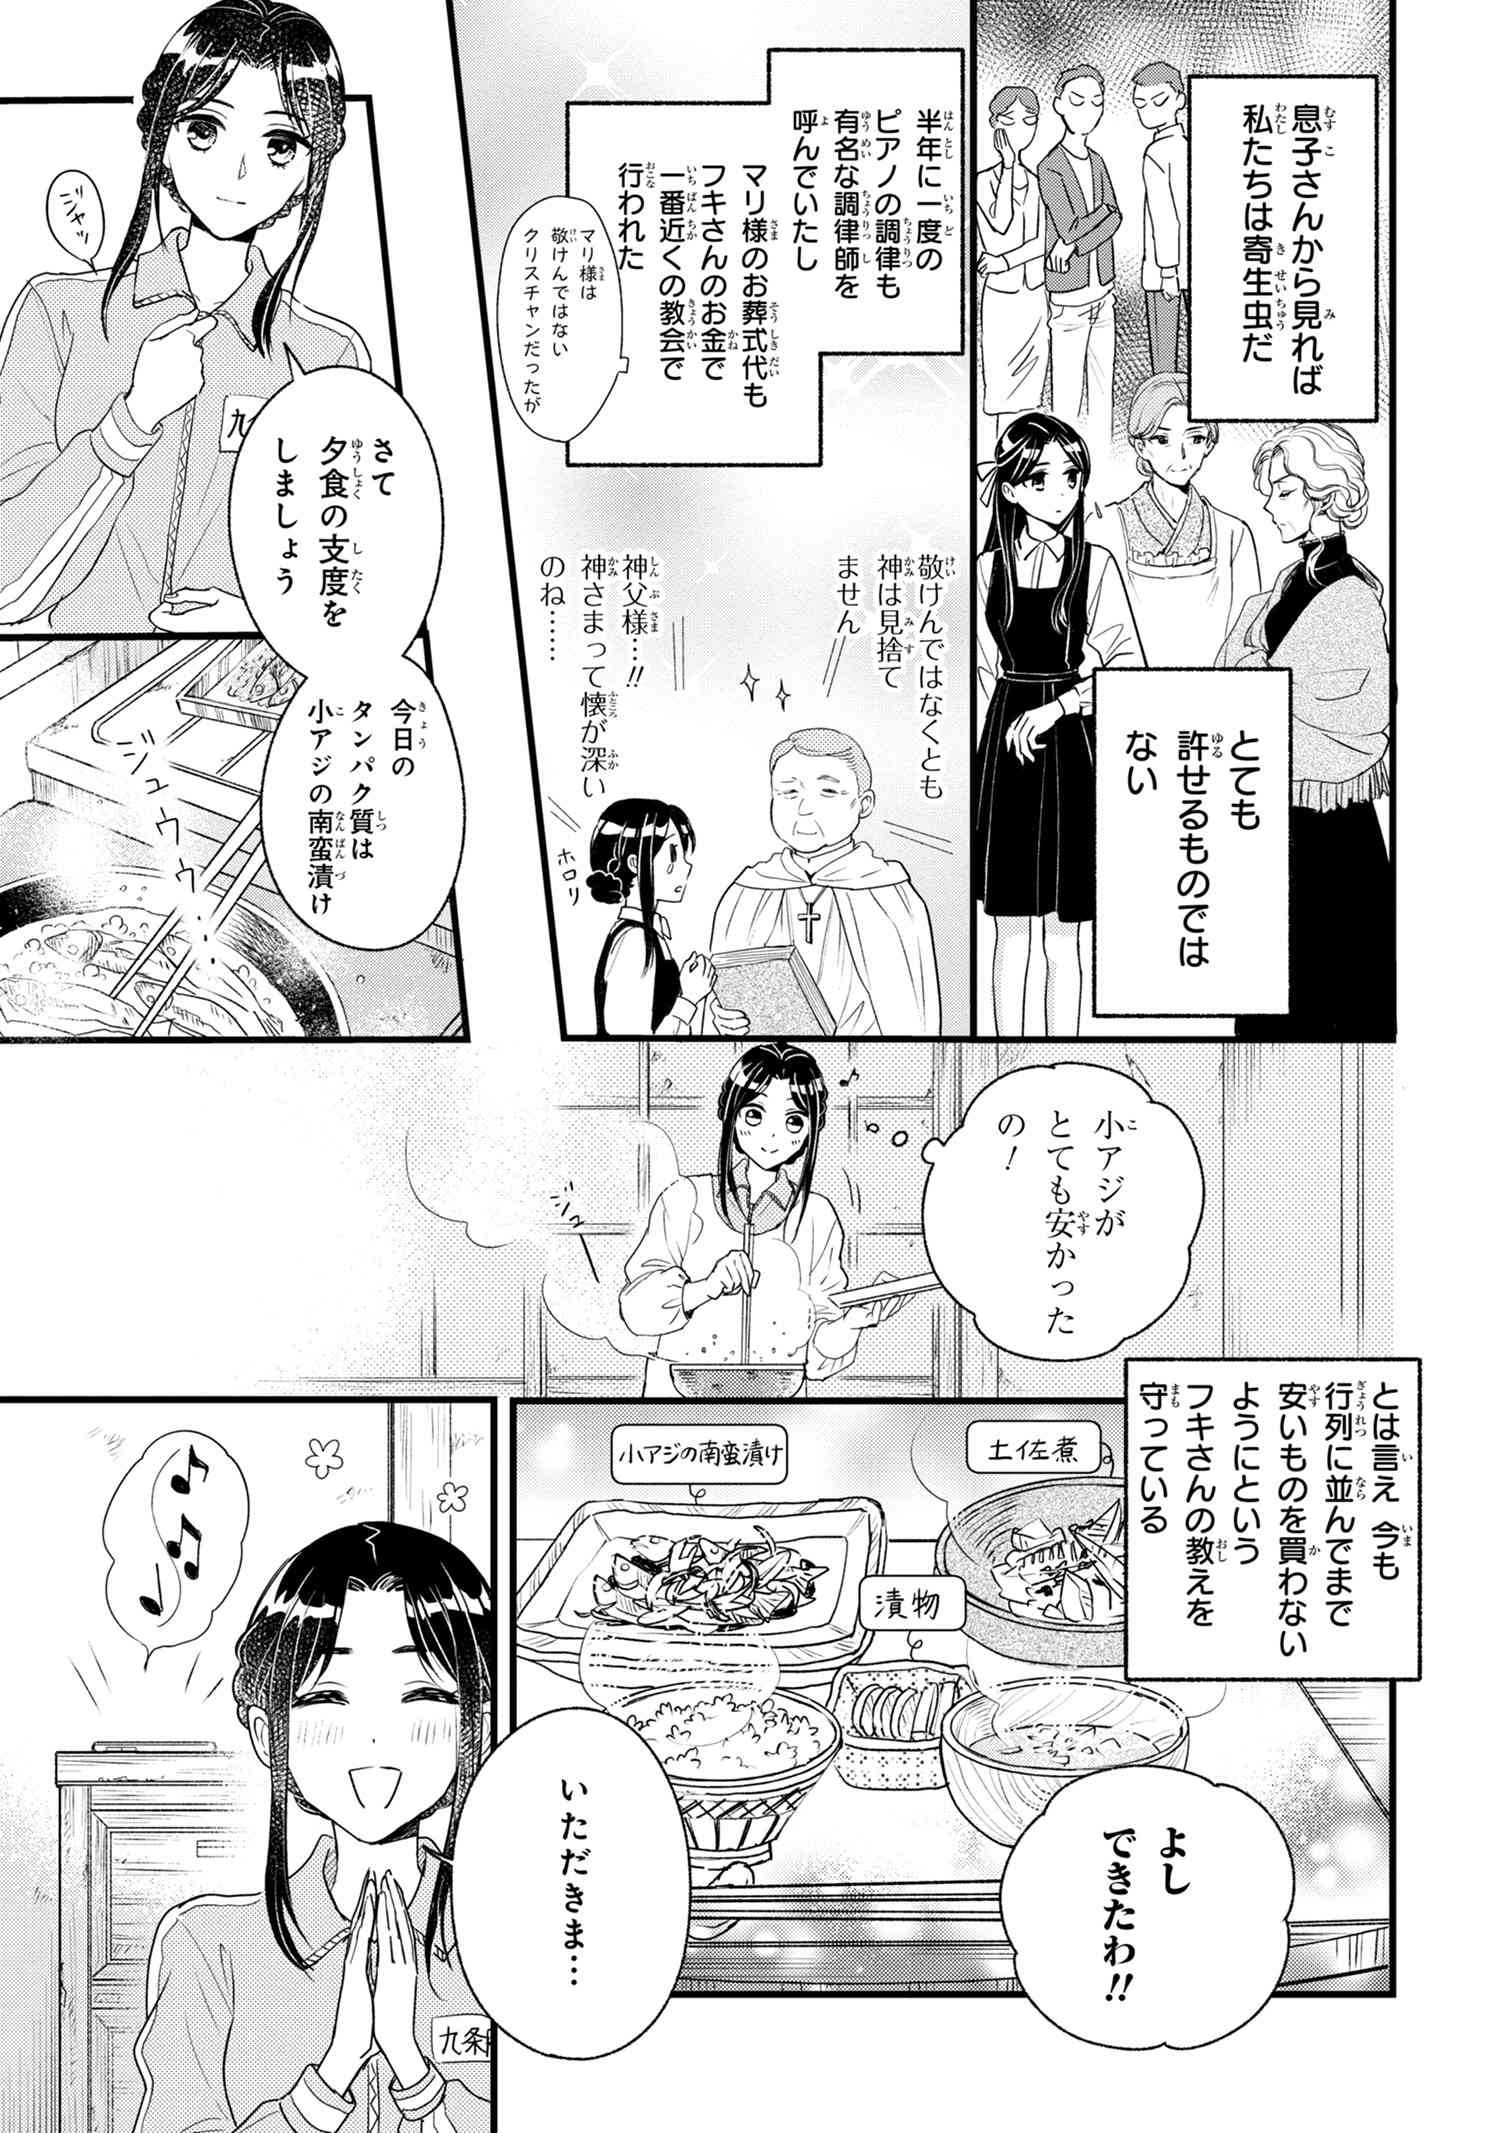 Reiko no Fuugi Akuyaku Reijou to Yobarete imasu ga, tada no Binbou Musume desu - Chapter 6-2 - Page 3